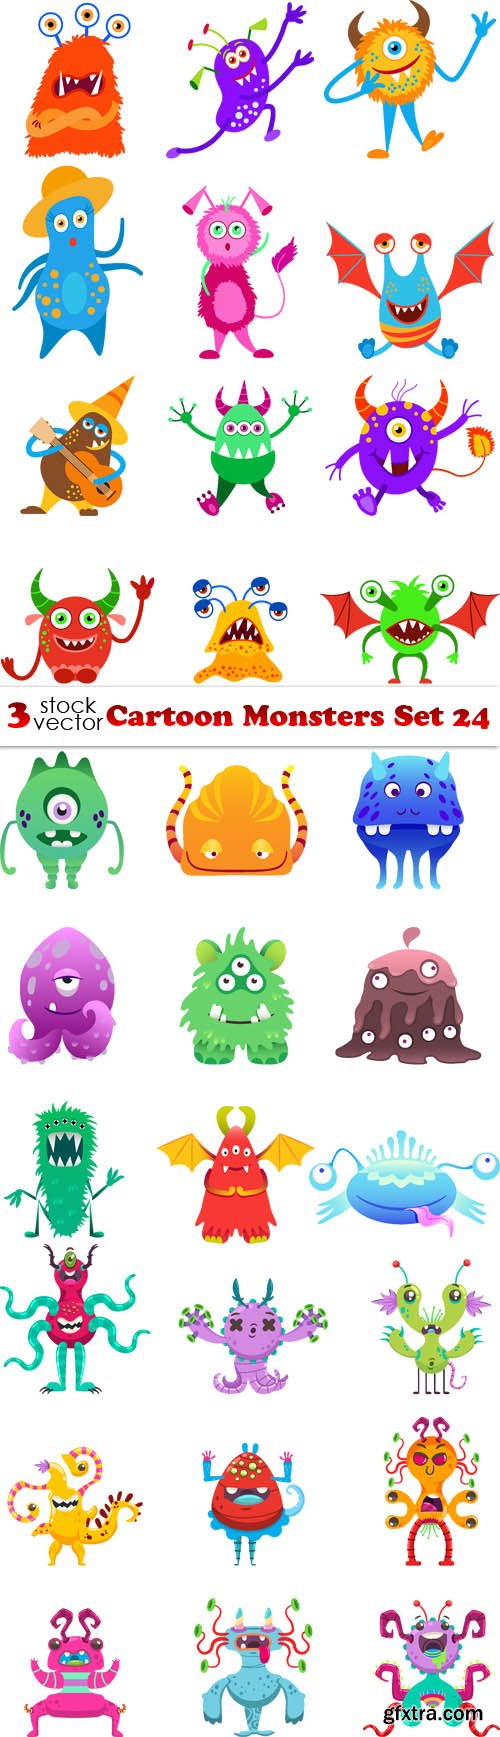 Vectors - Cartoon Monsters Set 24